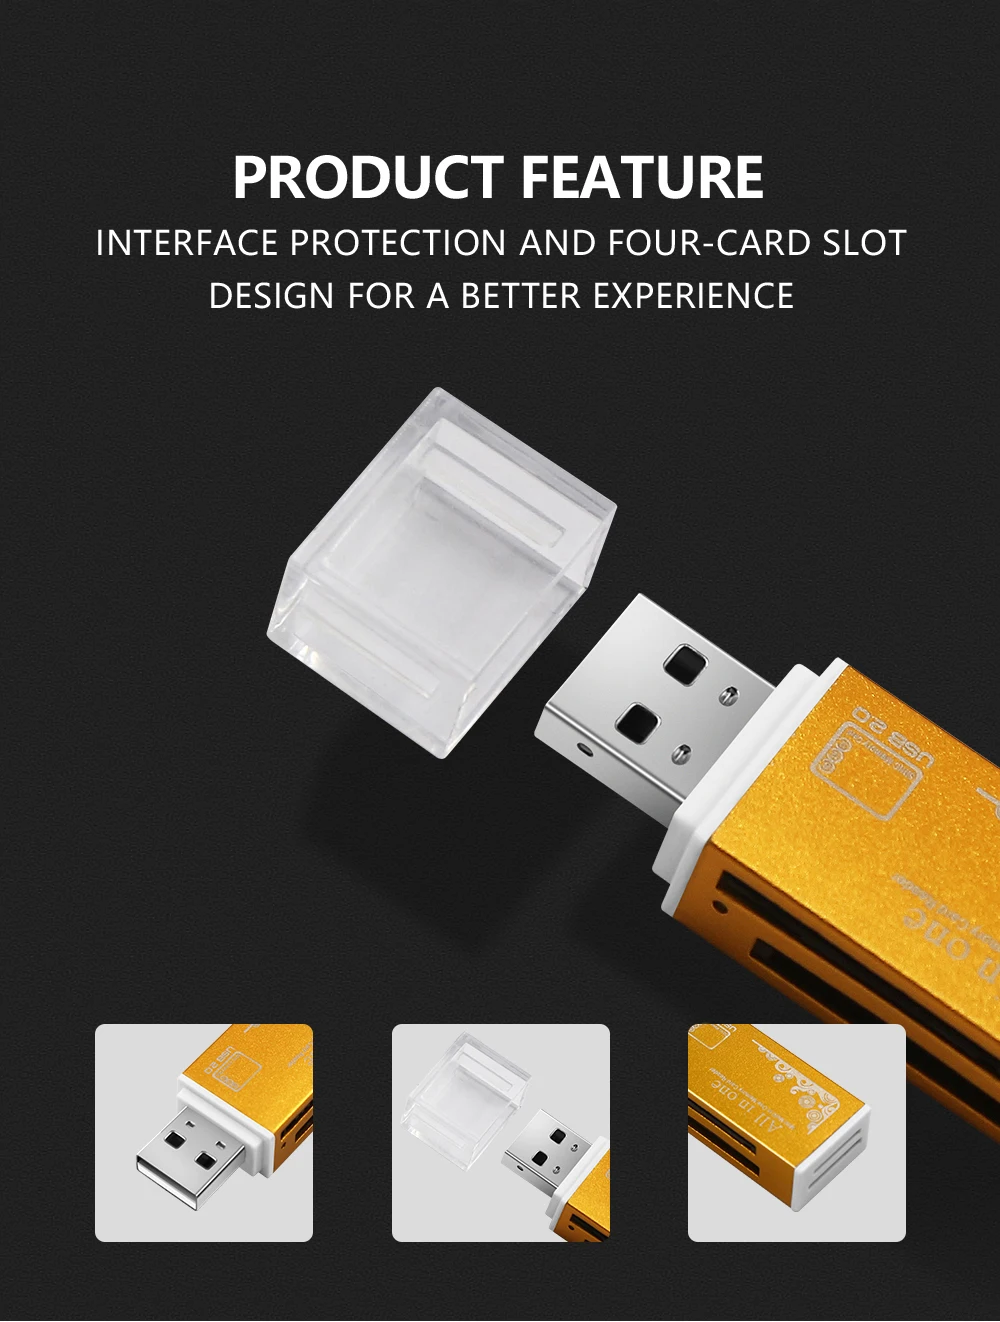 USB ридер со вспышкой цветной USB 2,0 все/мульти в 1 устройство для чтения карт памяти Адаптер для Micro SD SDHC TF M2 MMC лучшие подарки